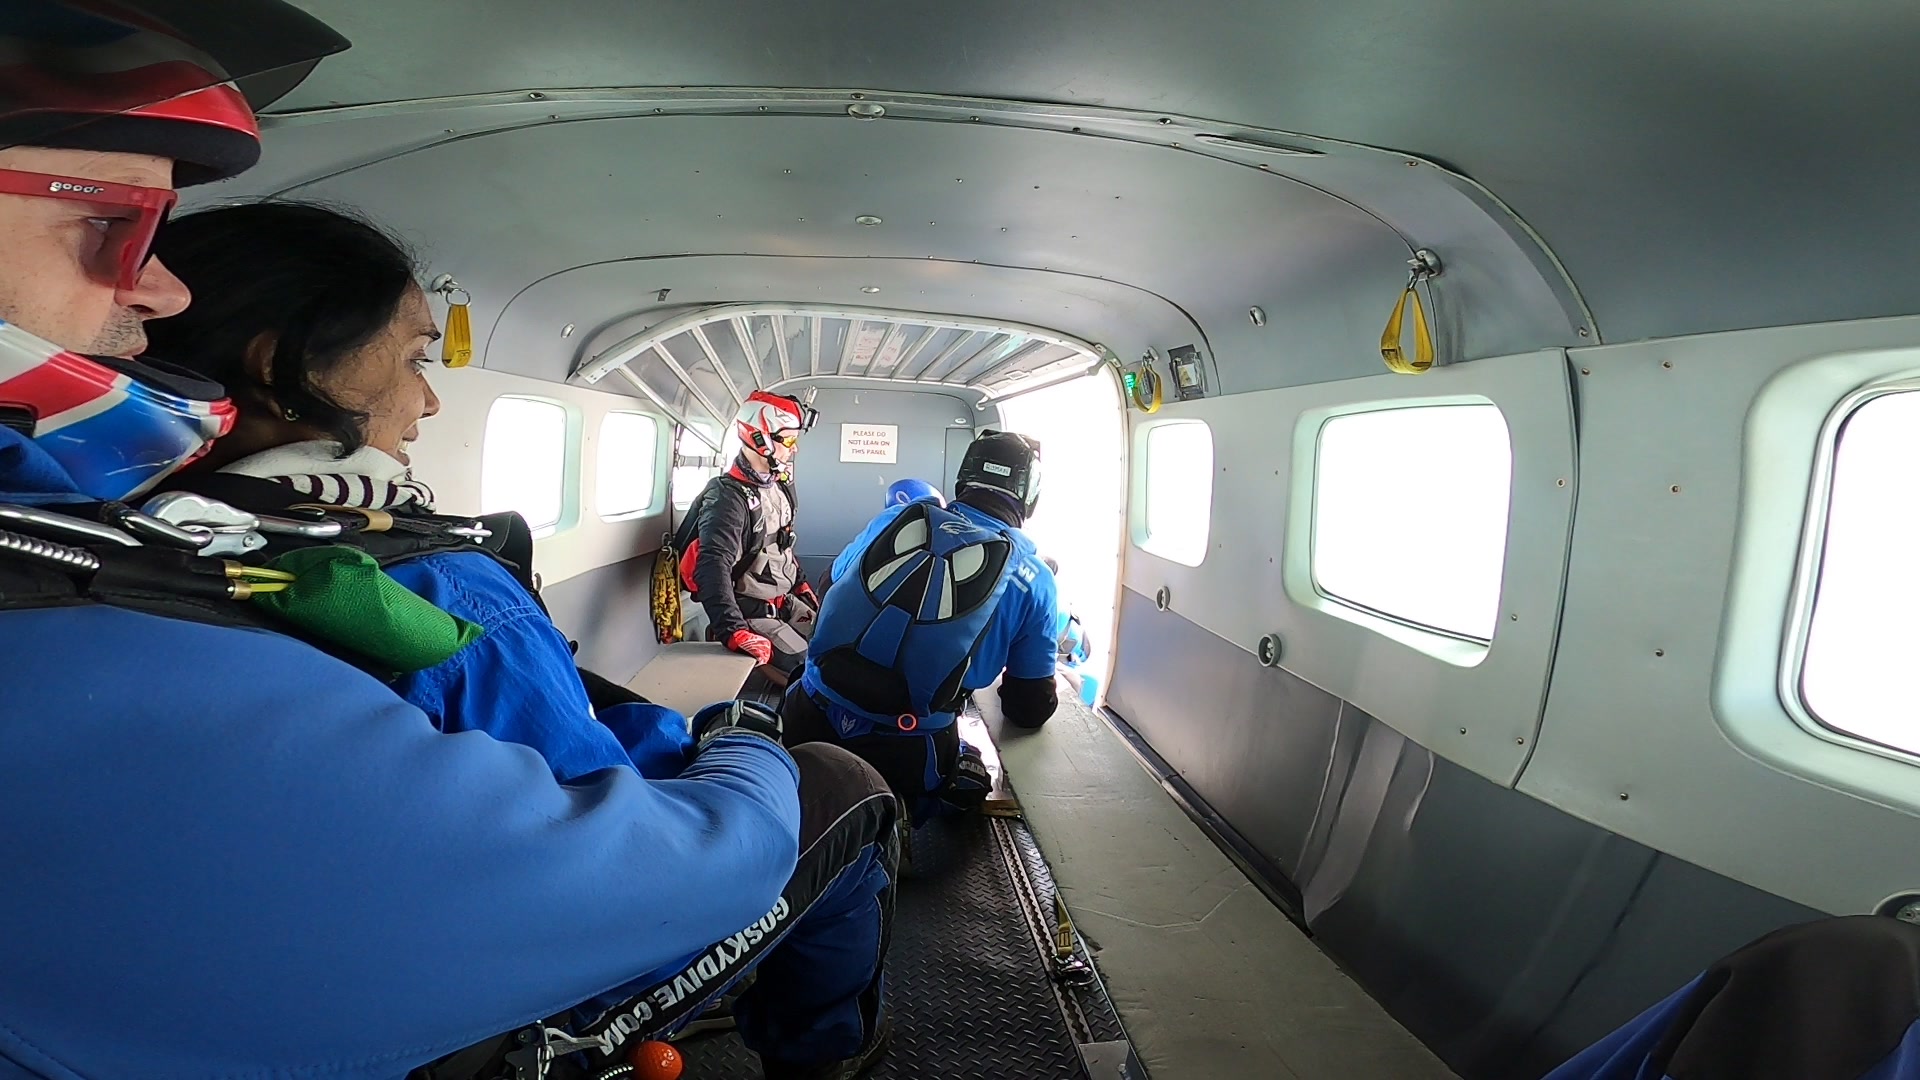 Skydivers preparing in plane